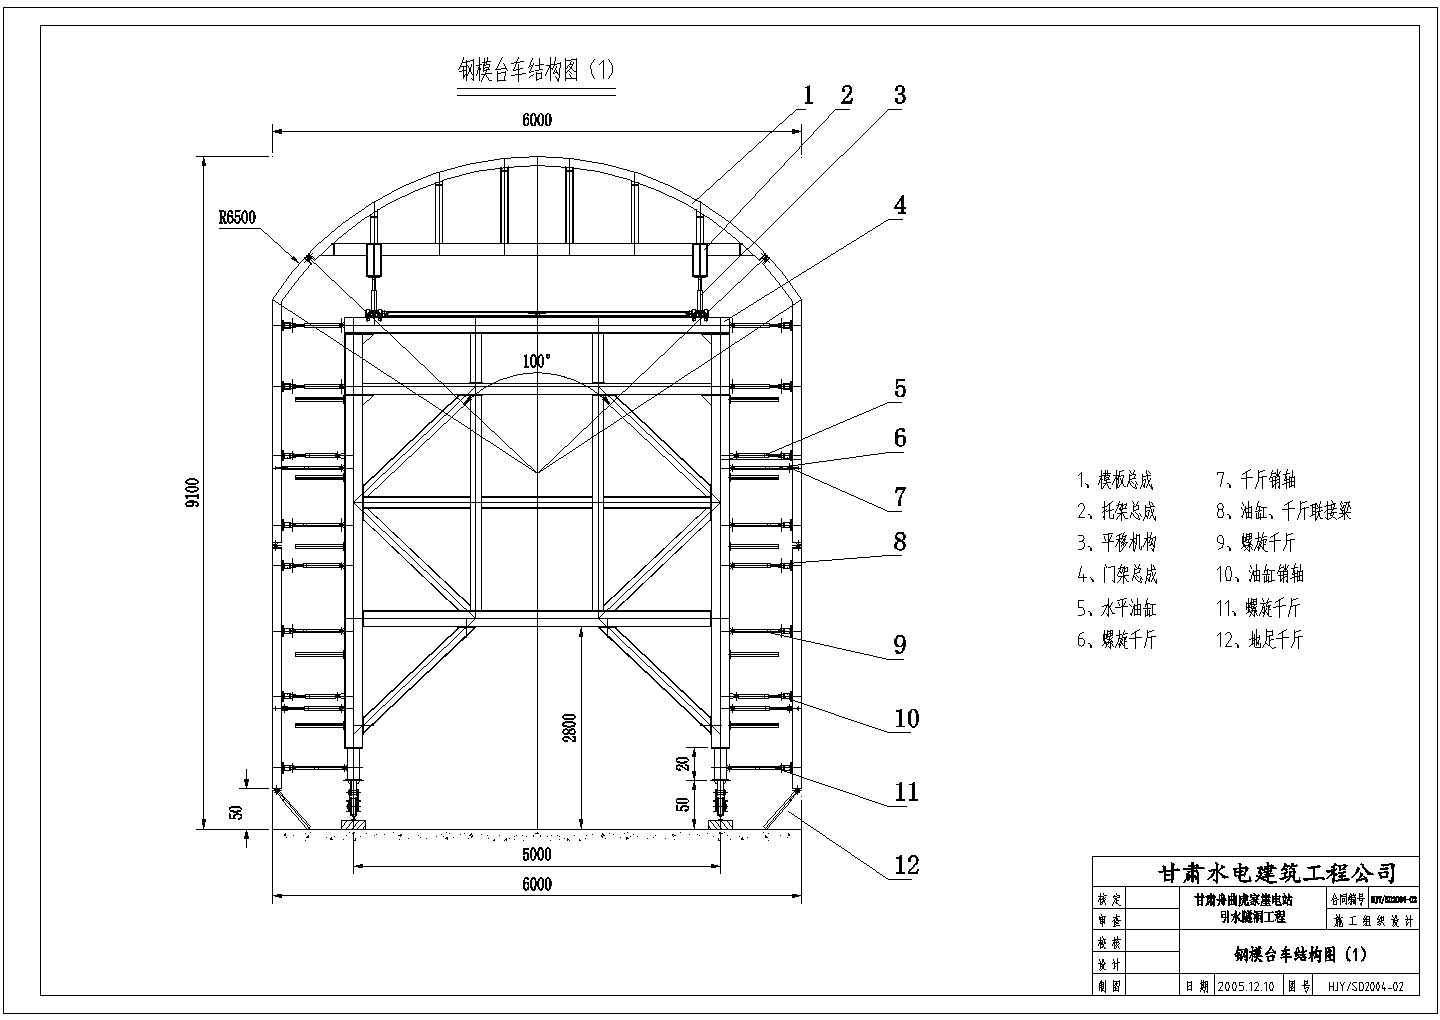 虎家崖电站引水隧洞工程钢模台车结构图